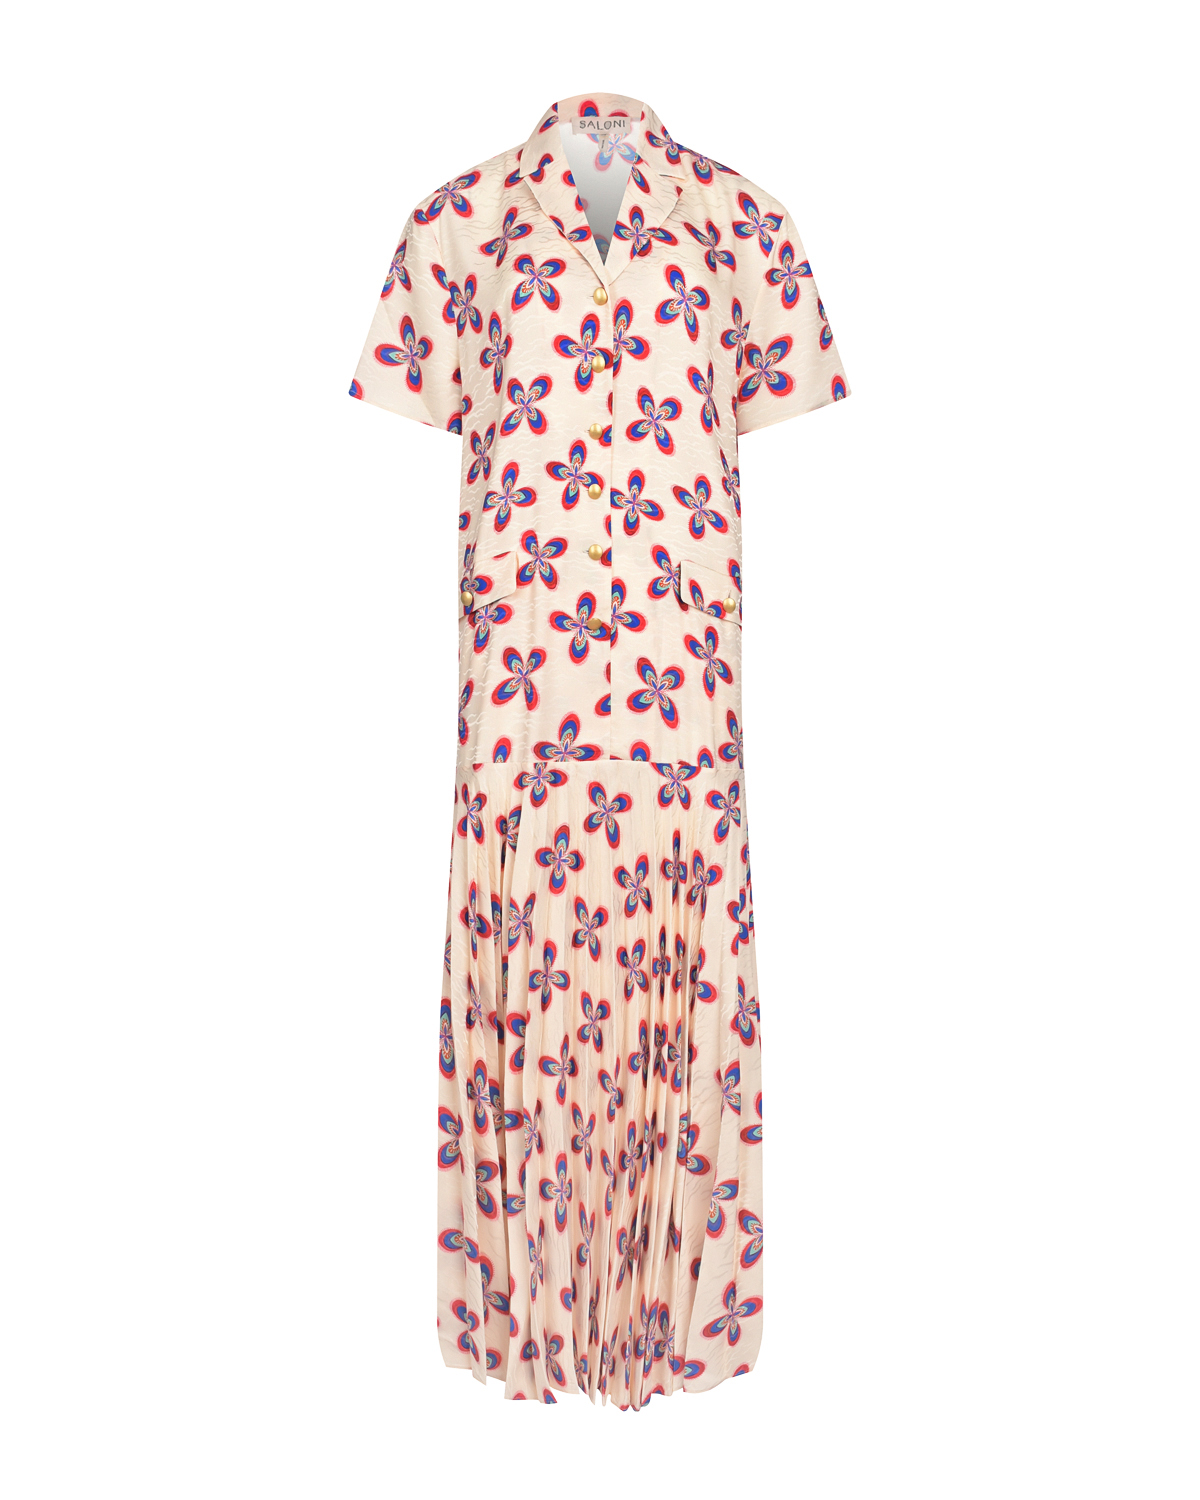 Кремовое платье с цветочным принтом Saloni, размер 42